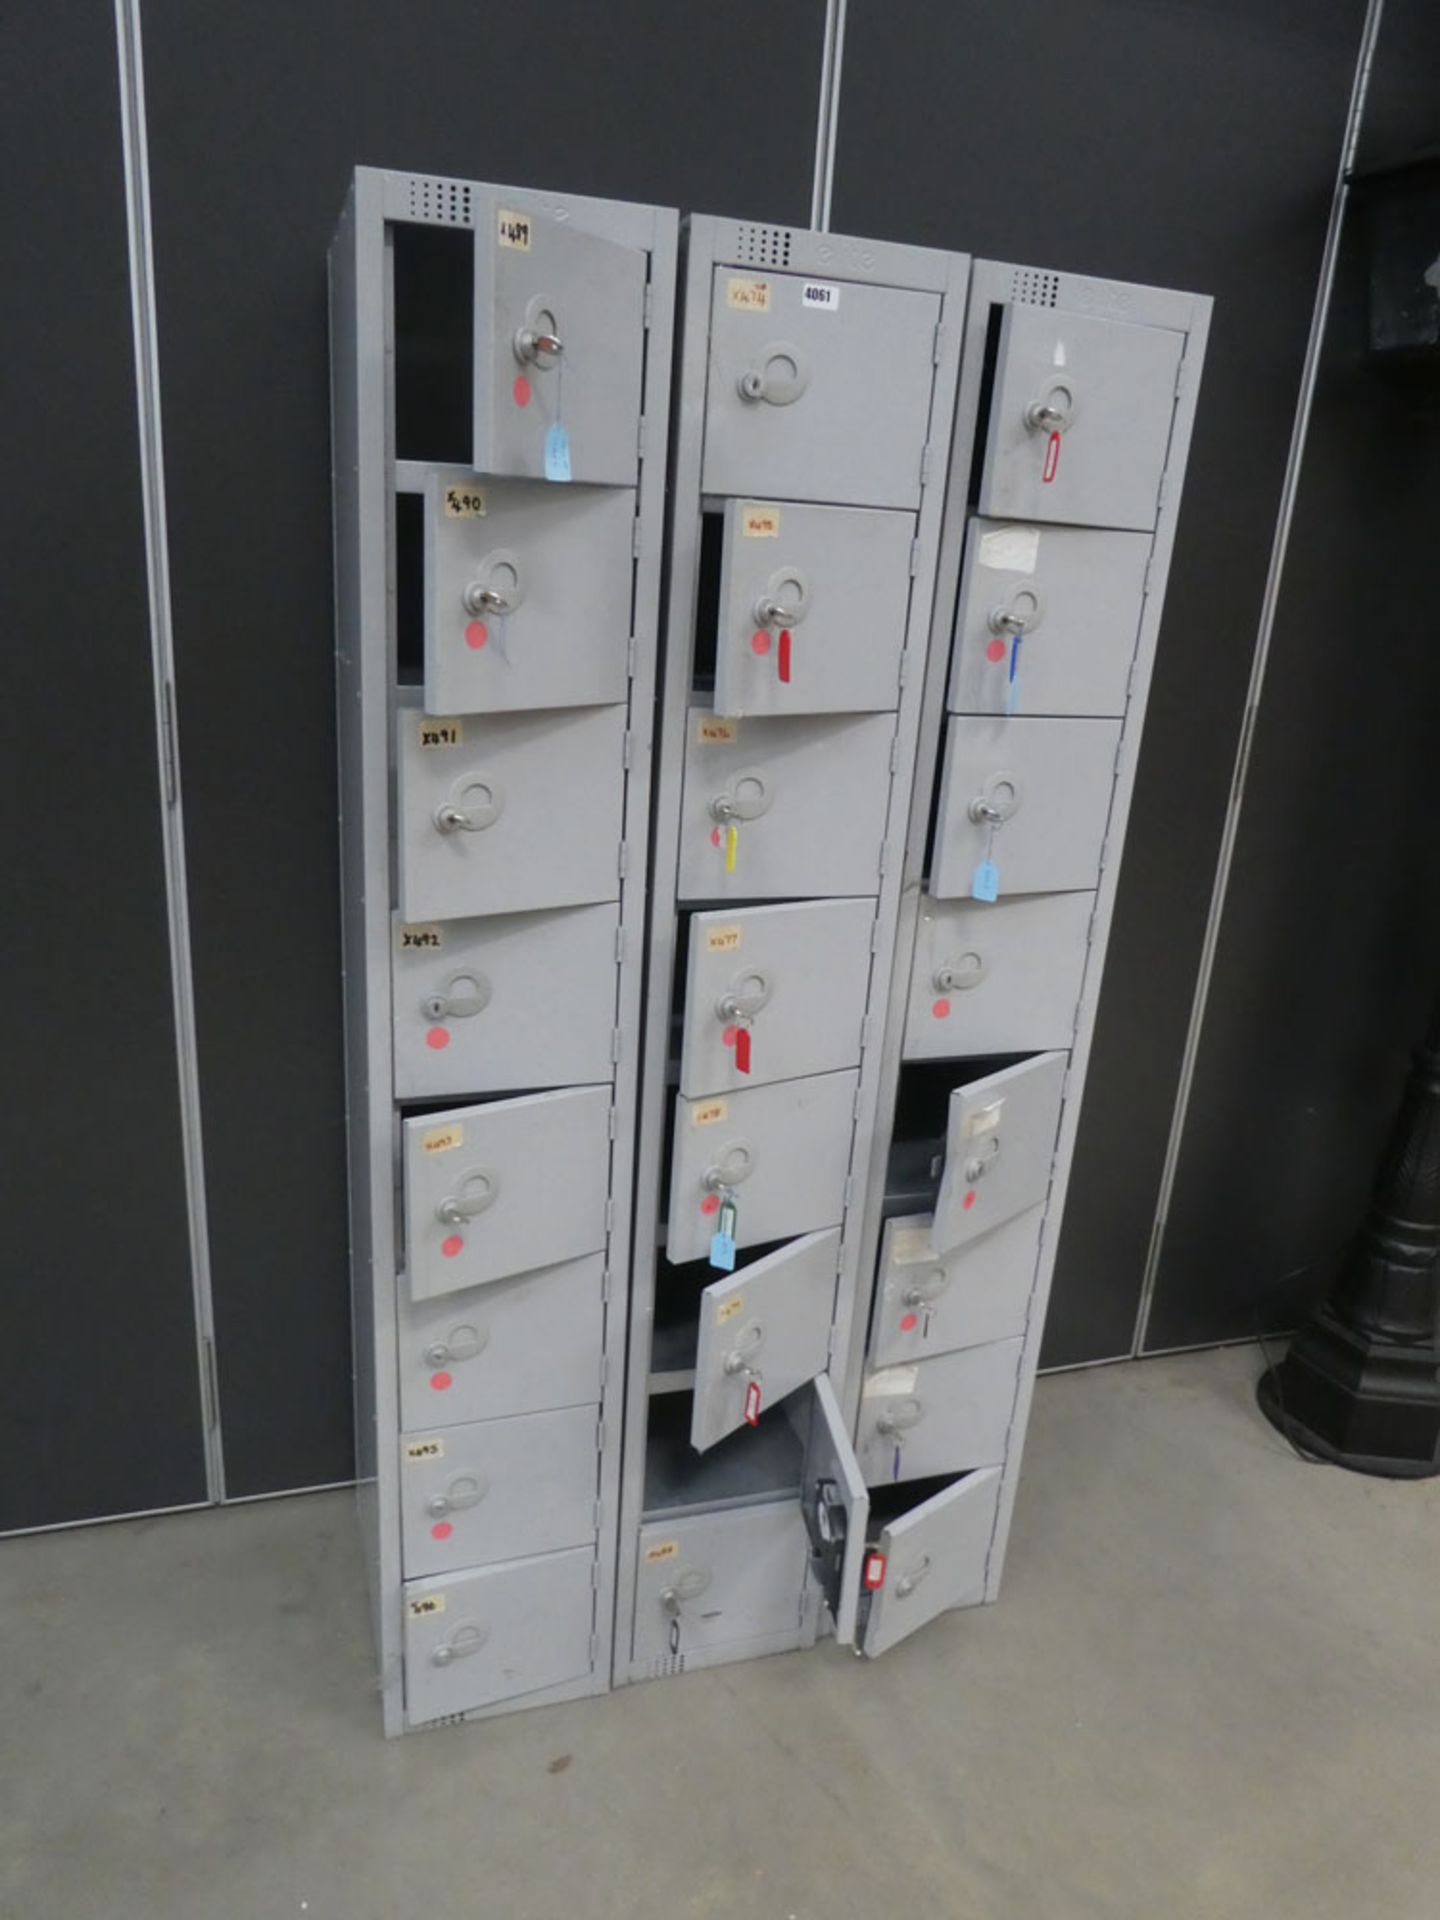 3 sets of metal lockers with keys